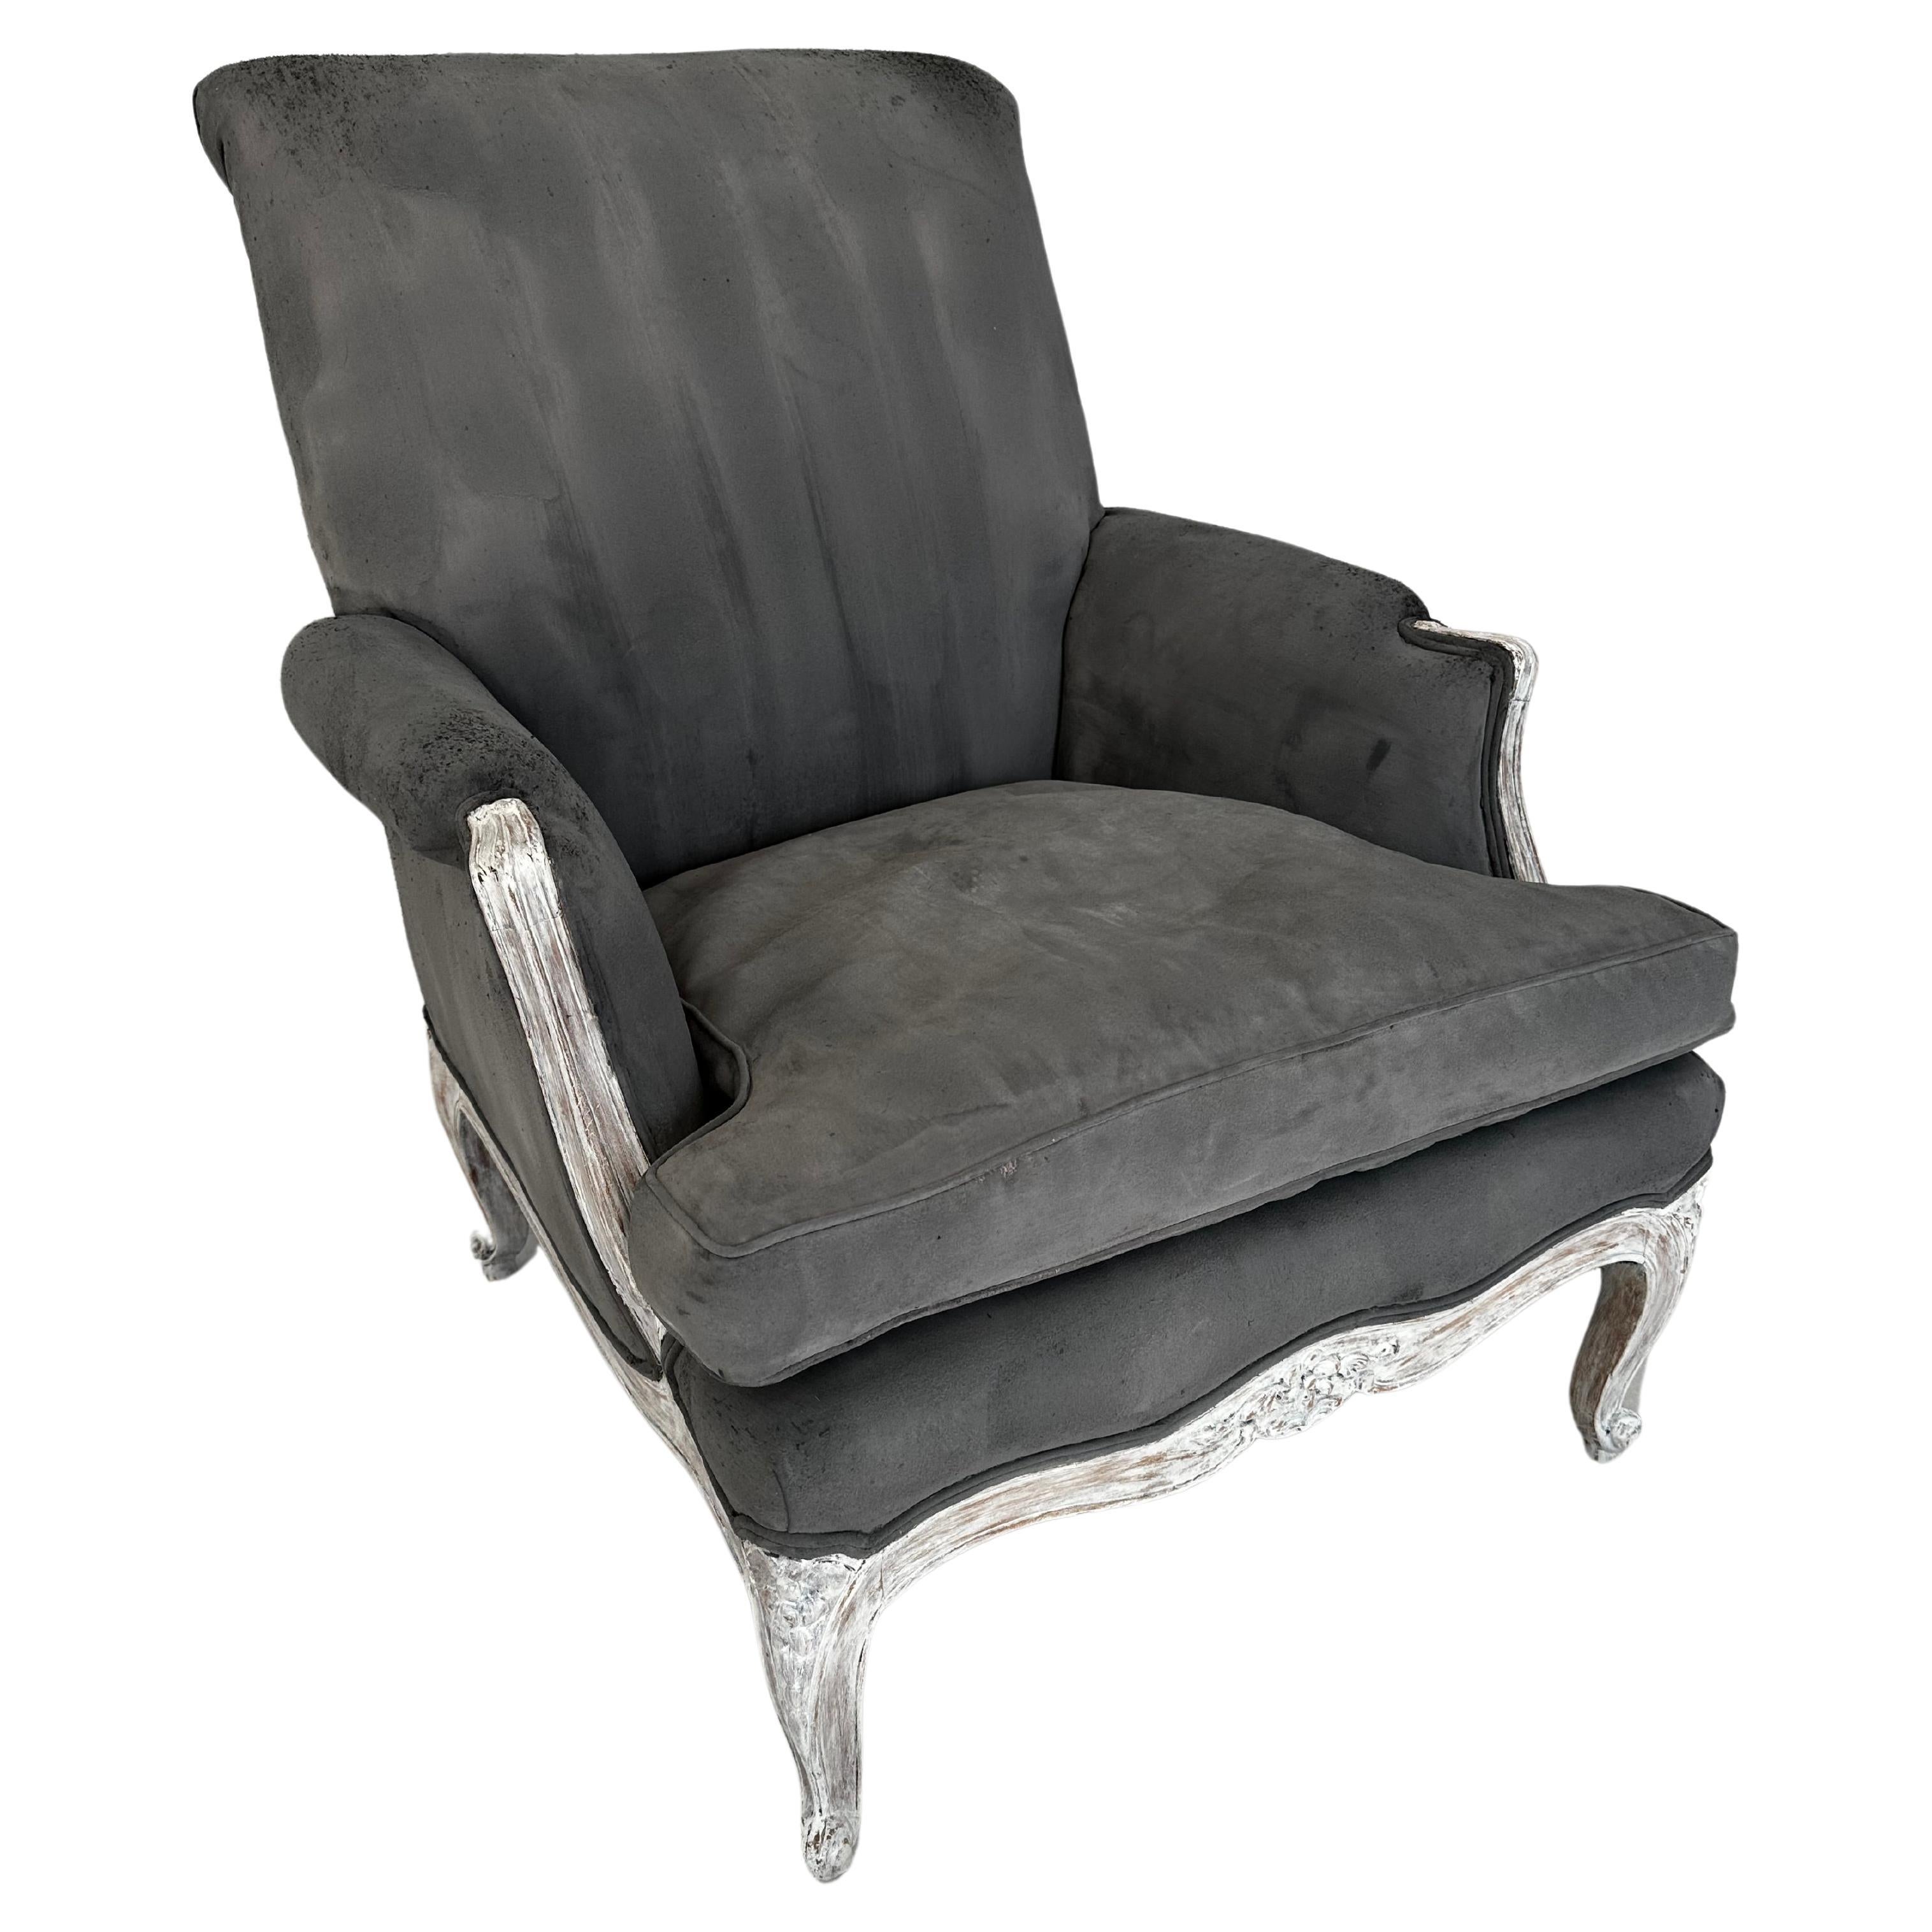 Le fauteuil de style provincial Louis XV, confortable et accueillant, s'intègre parfaitement à tout espace intérieur, qu'il s'agisse d'une chambre à coucher, d'un salon ou d'une salle de séjour.
La chaise bien fabriquée avec un cadre en bois sculpté